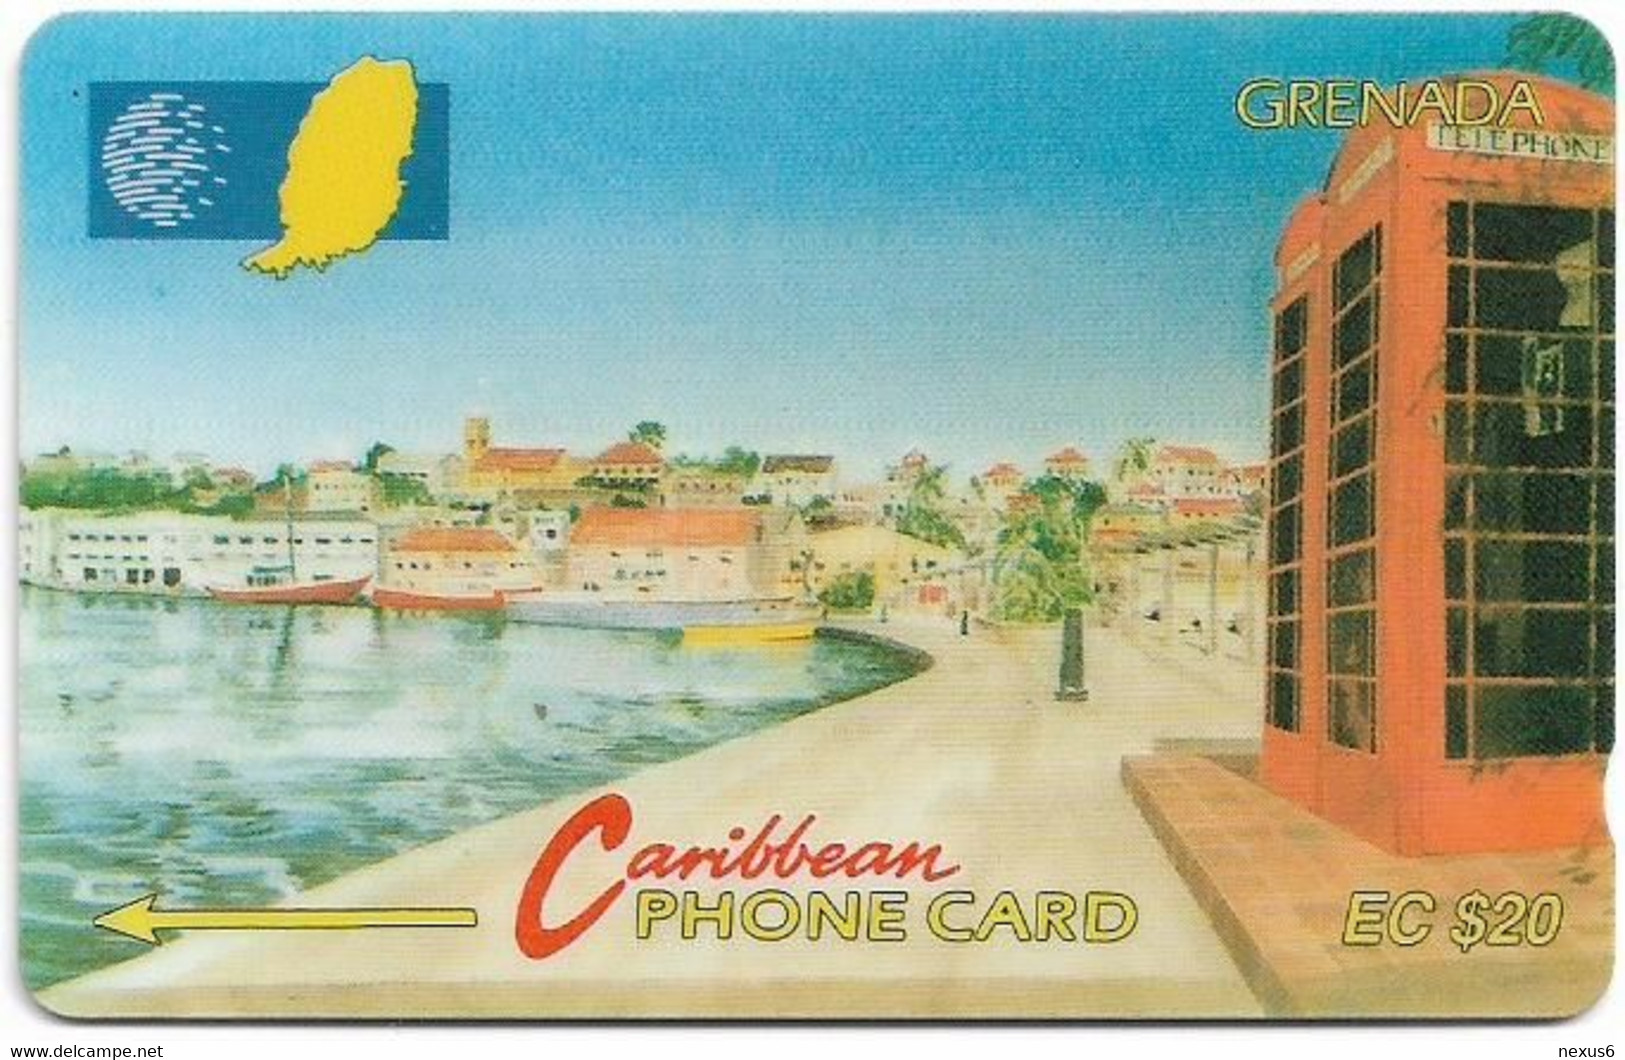 Grenada - C&W (GPT) - Carenage St. Georges - 8CGRB - 1994, 11.129ex, Used - Grenada (Granada)